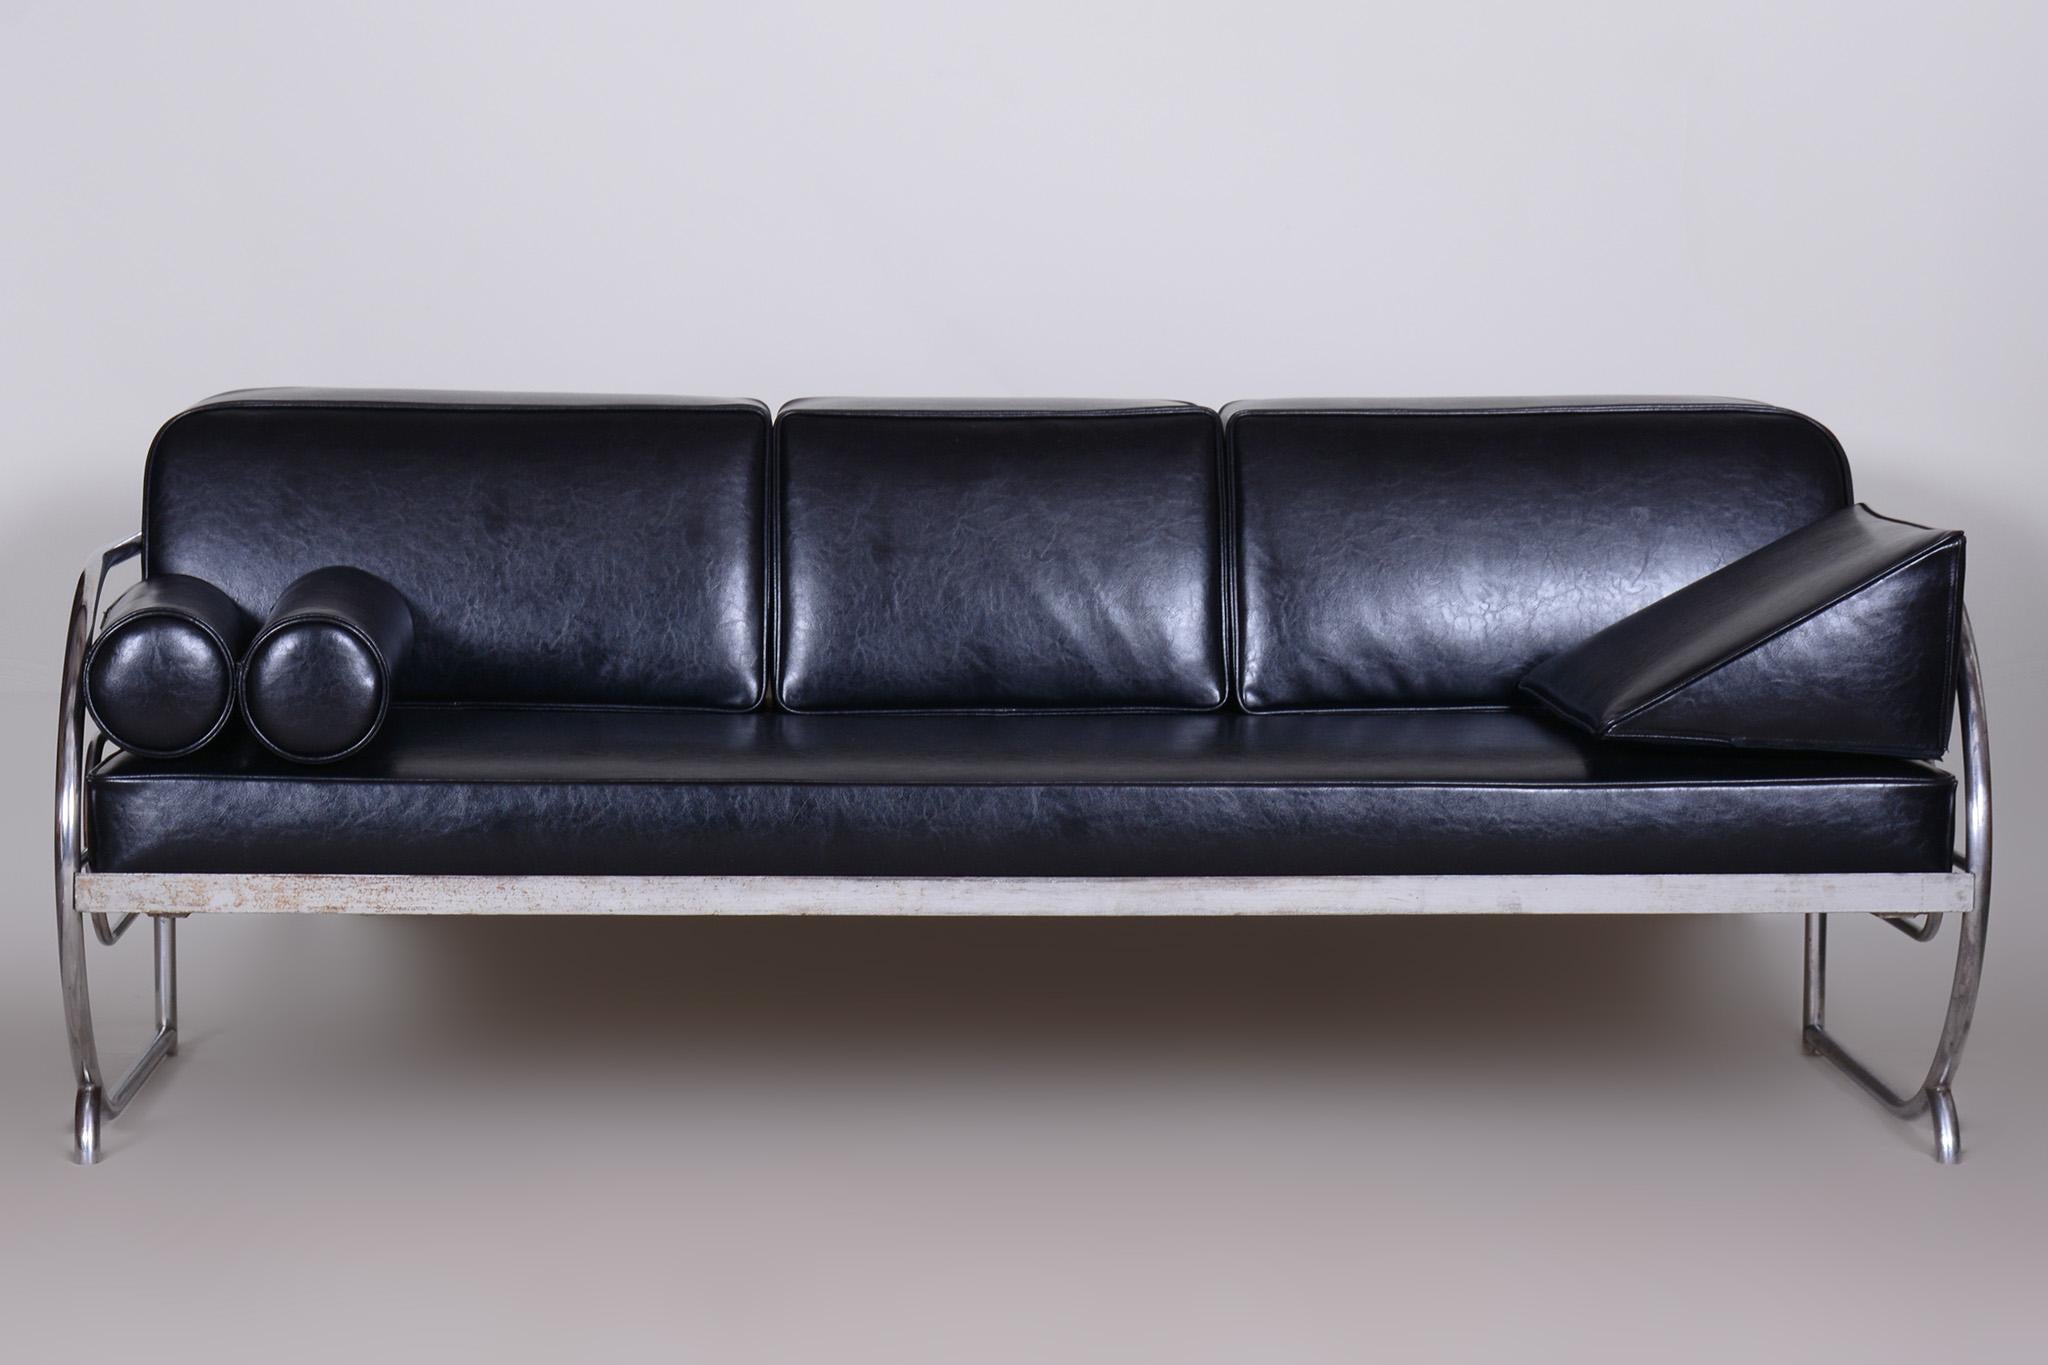 Canapé de style Bauhaus restauré avec cadre en tube d'acier chromé.

Fabriqué par Robert Slezák dans les années 1930.
Le canapé est recouvert de cuir noir de haute qualité.
Source : Tchèque (Tchécoslovaquie).